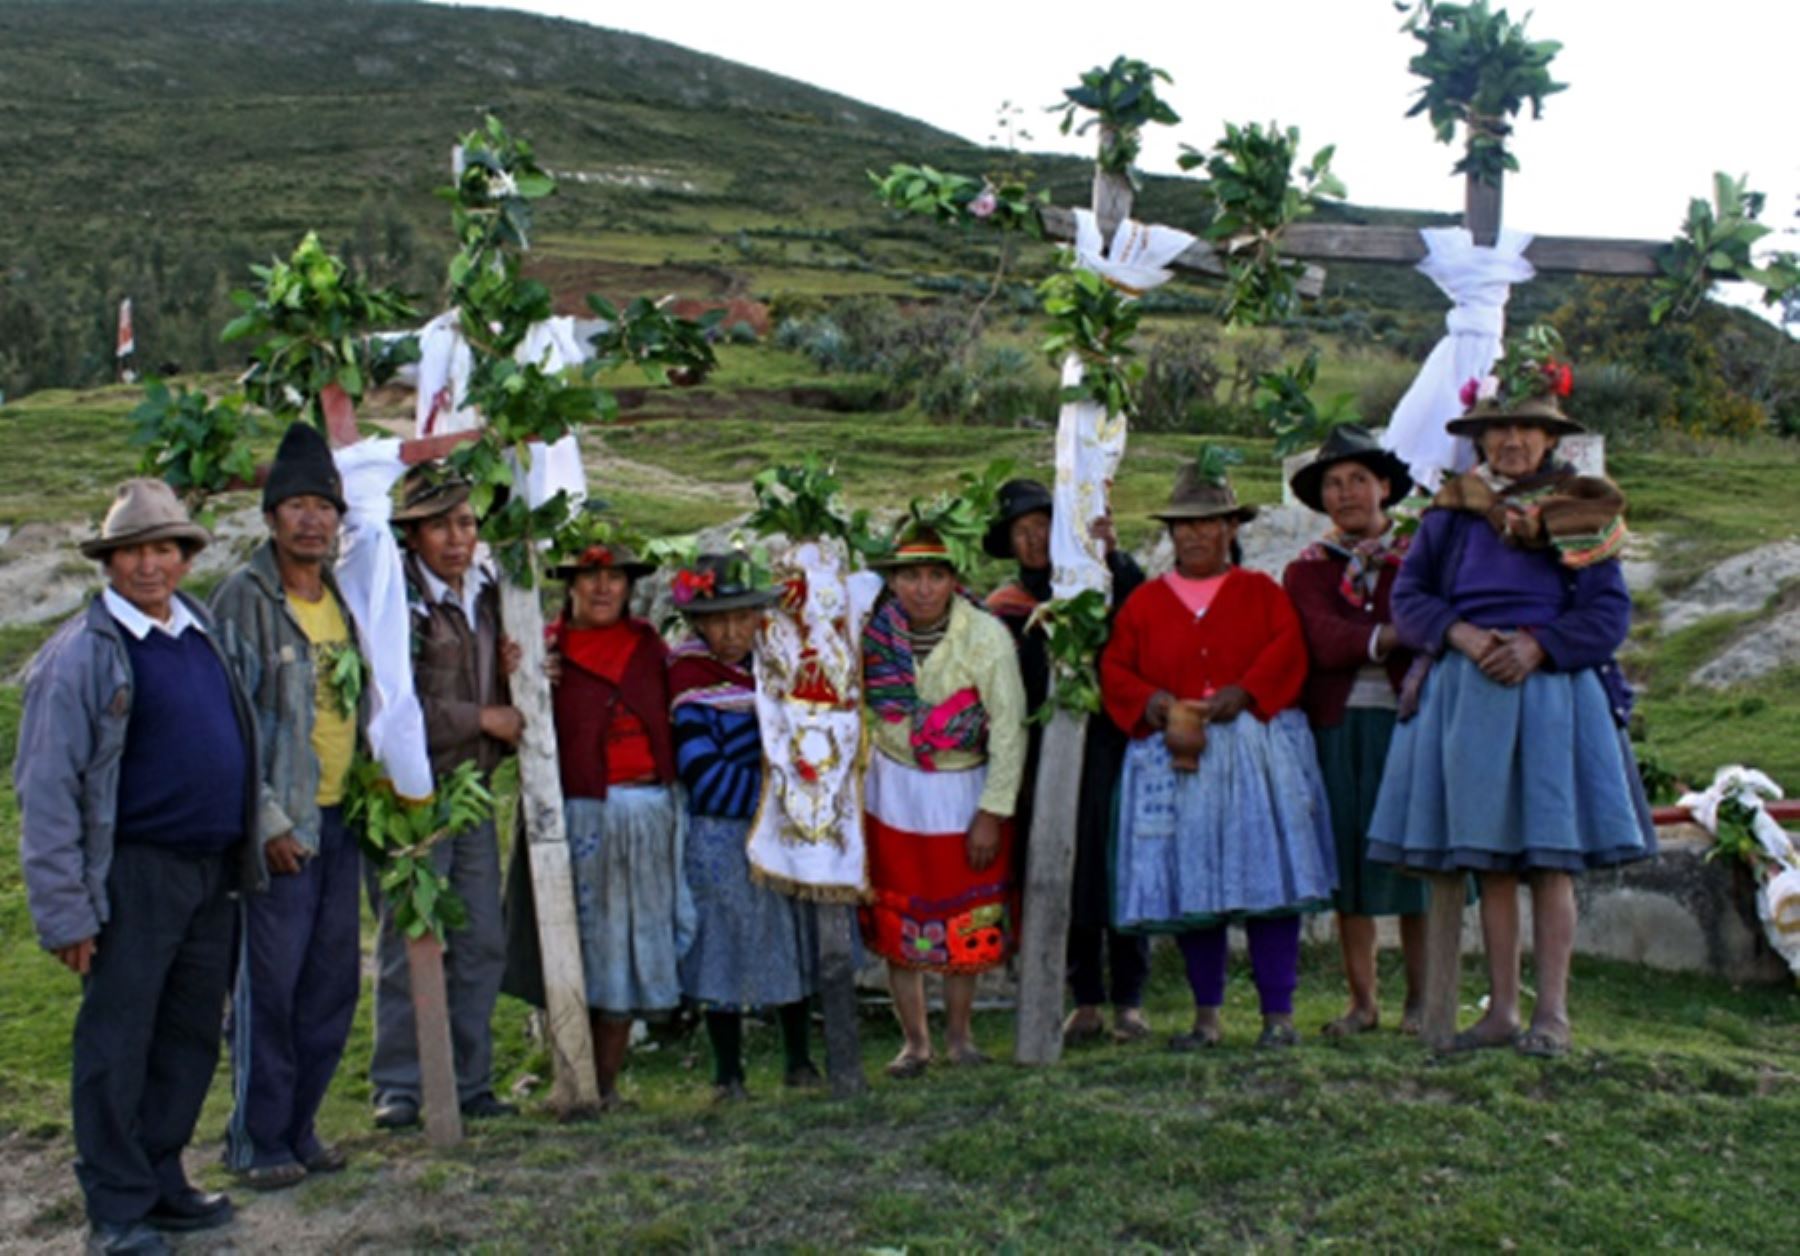 El distrito de Curasco, perteneciente a la provincia de Grau, celebra la Fiesta de la Santísima Cruz de Curasco, con una duración de una semana, siendo el día central el 3 de mayo.